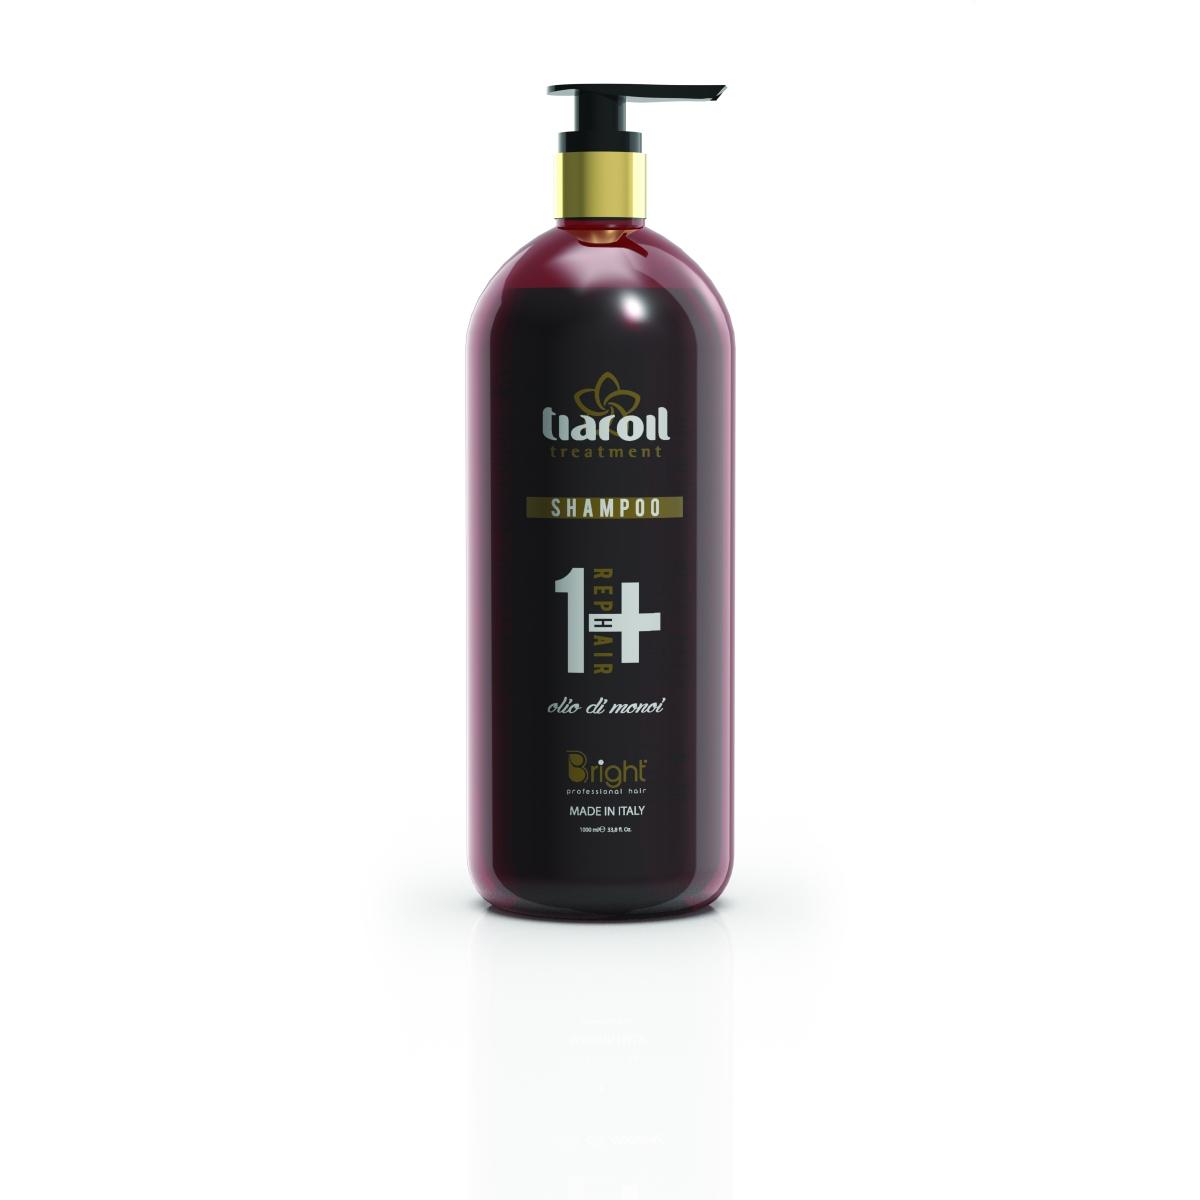 Bright Tiaroil Shampoo olio di monoi 1000 ml